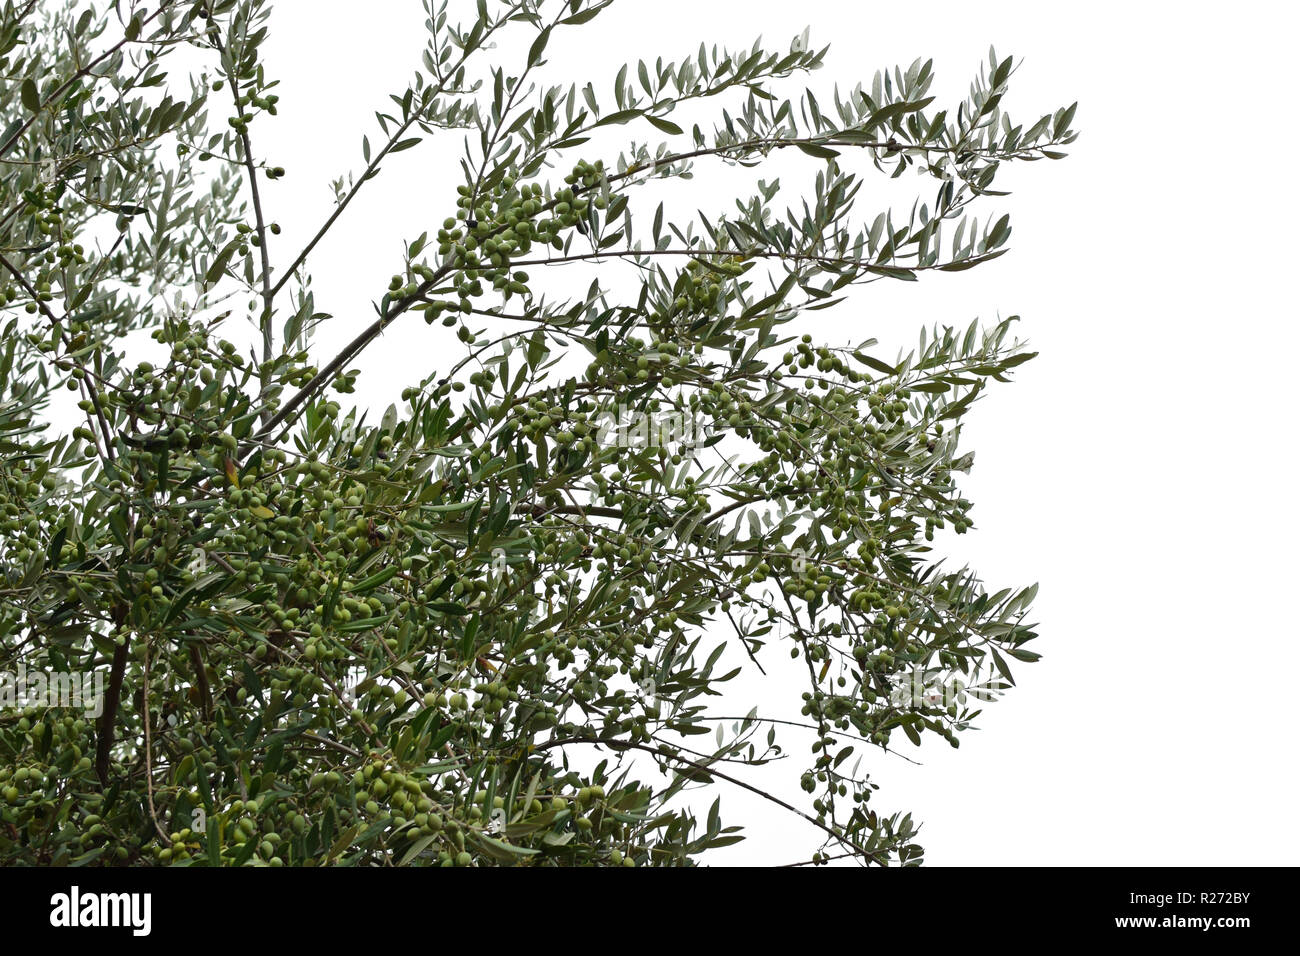 Olivenbaum Zweige mit reifen Oliven auf weißem Hintergrund. Stockfoto